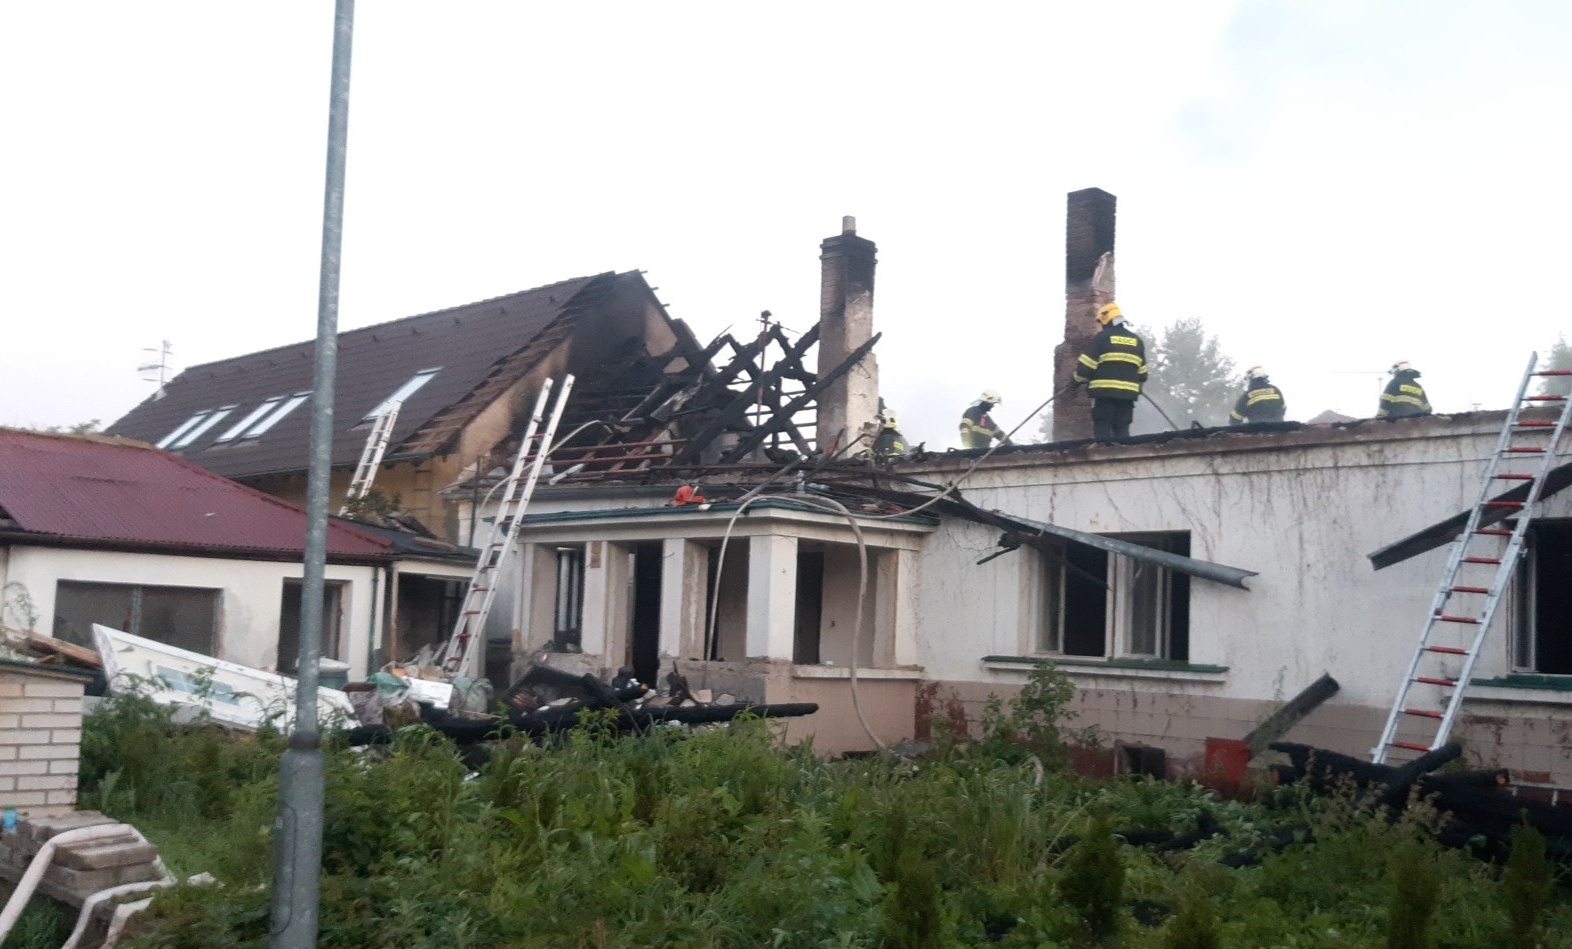 SČK_Požár RD v Šestajovicích_hasiči dohašují skrytá ohniska na střeše.jpg